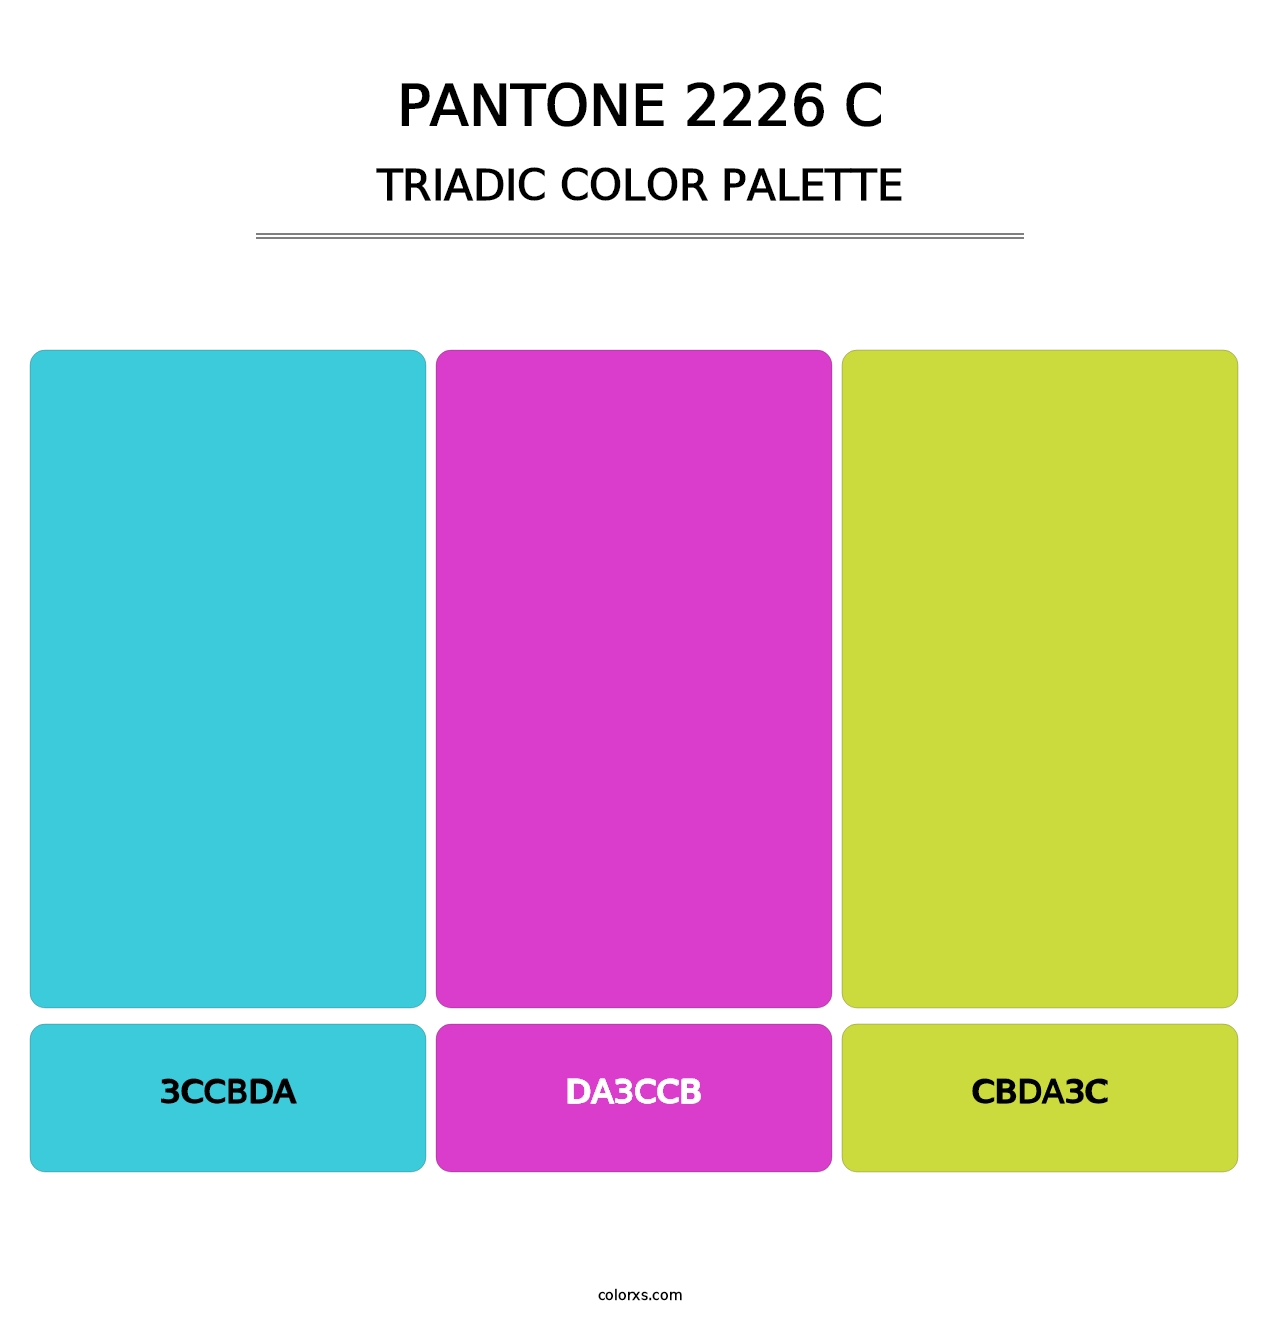 PANTONE 2226 C - Triadic Color Palette